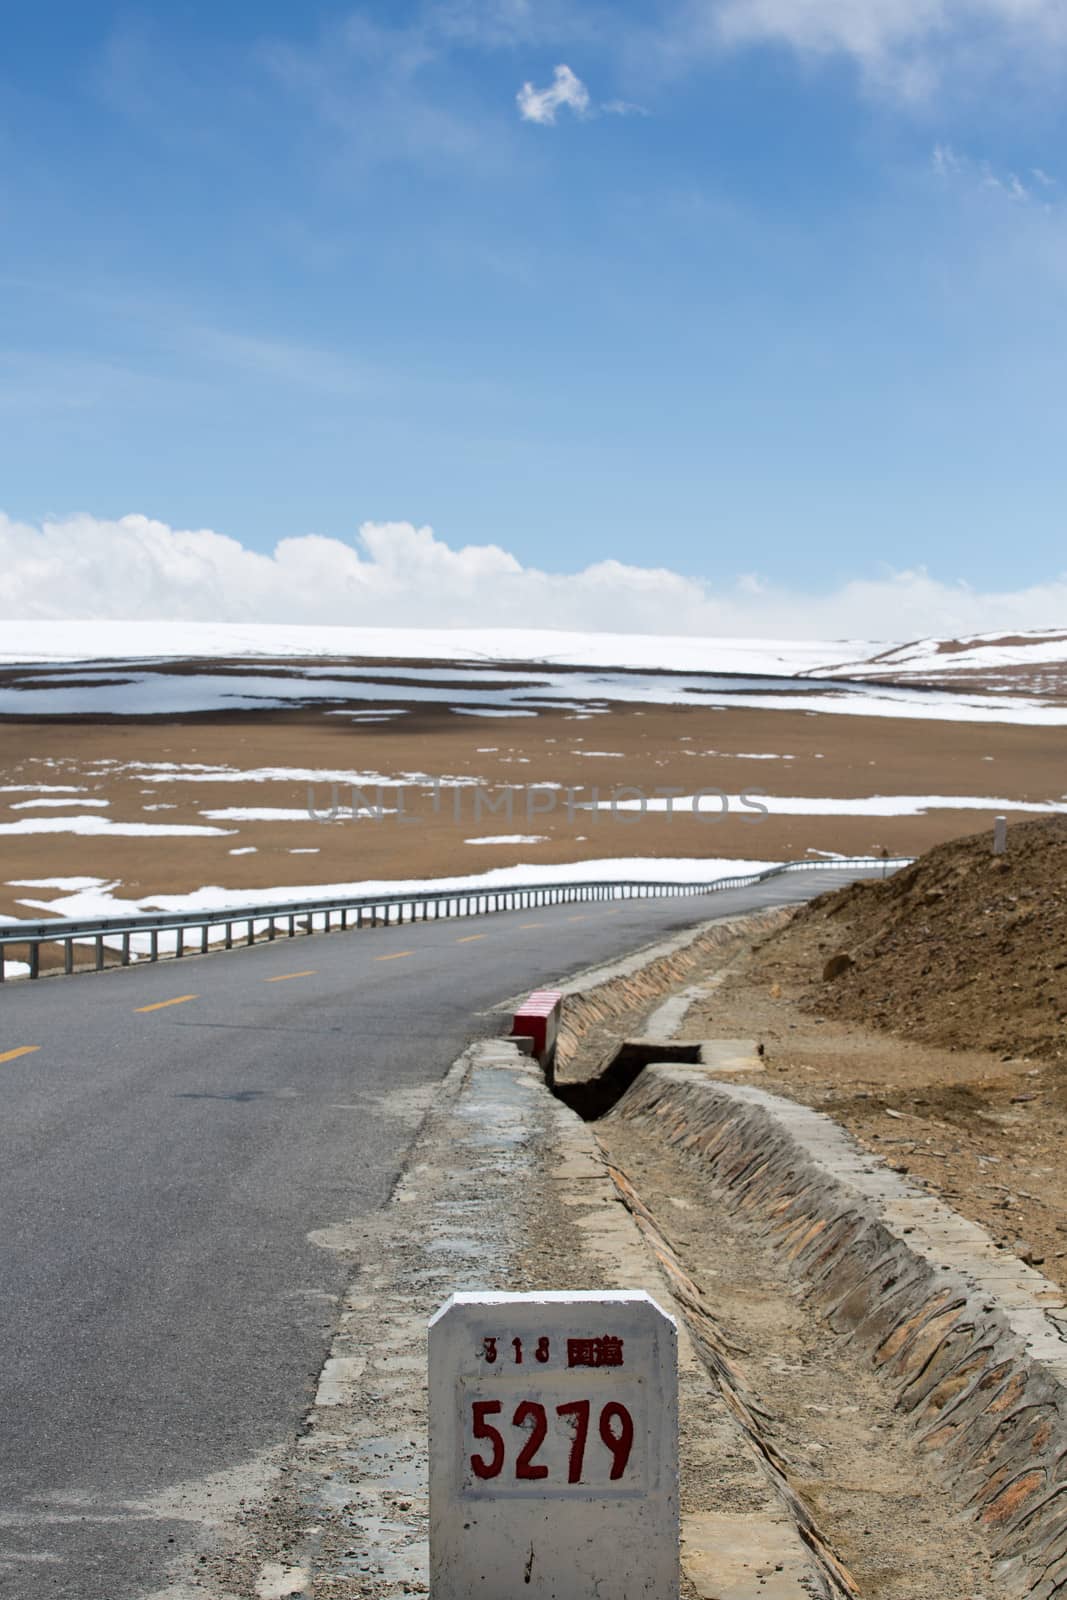 Tibetan landscape on the Friendshiip Highway in Tibet by watchtheworld